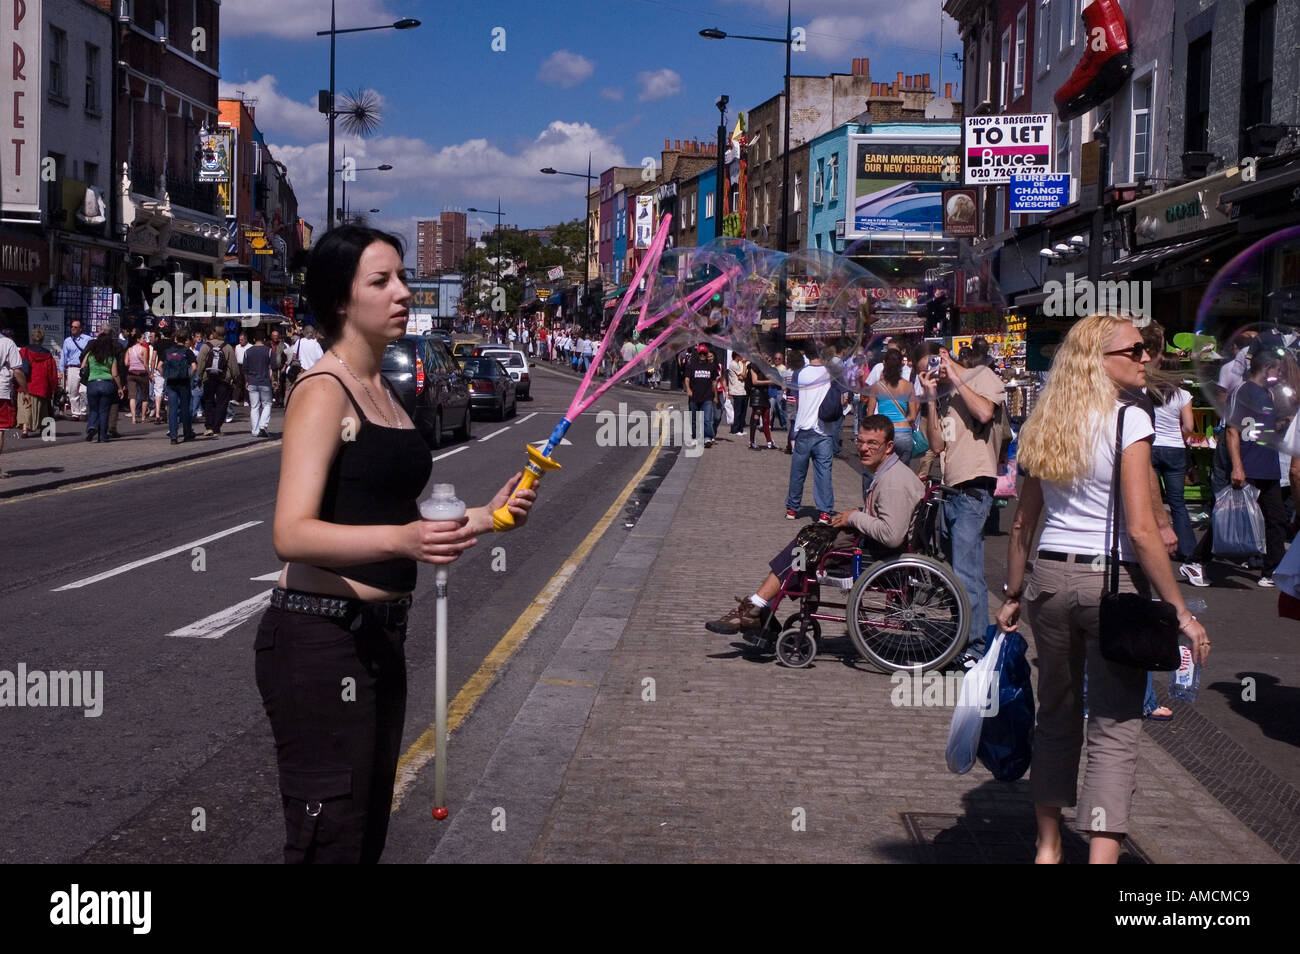 Frau große Seifenblasen auf einer Straße, Camden High Street, Camden Town, London, England Stockfoto